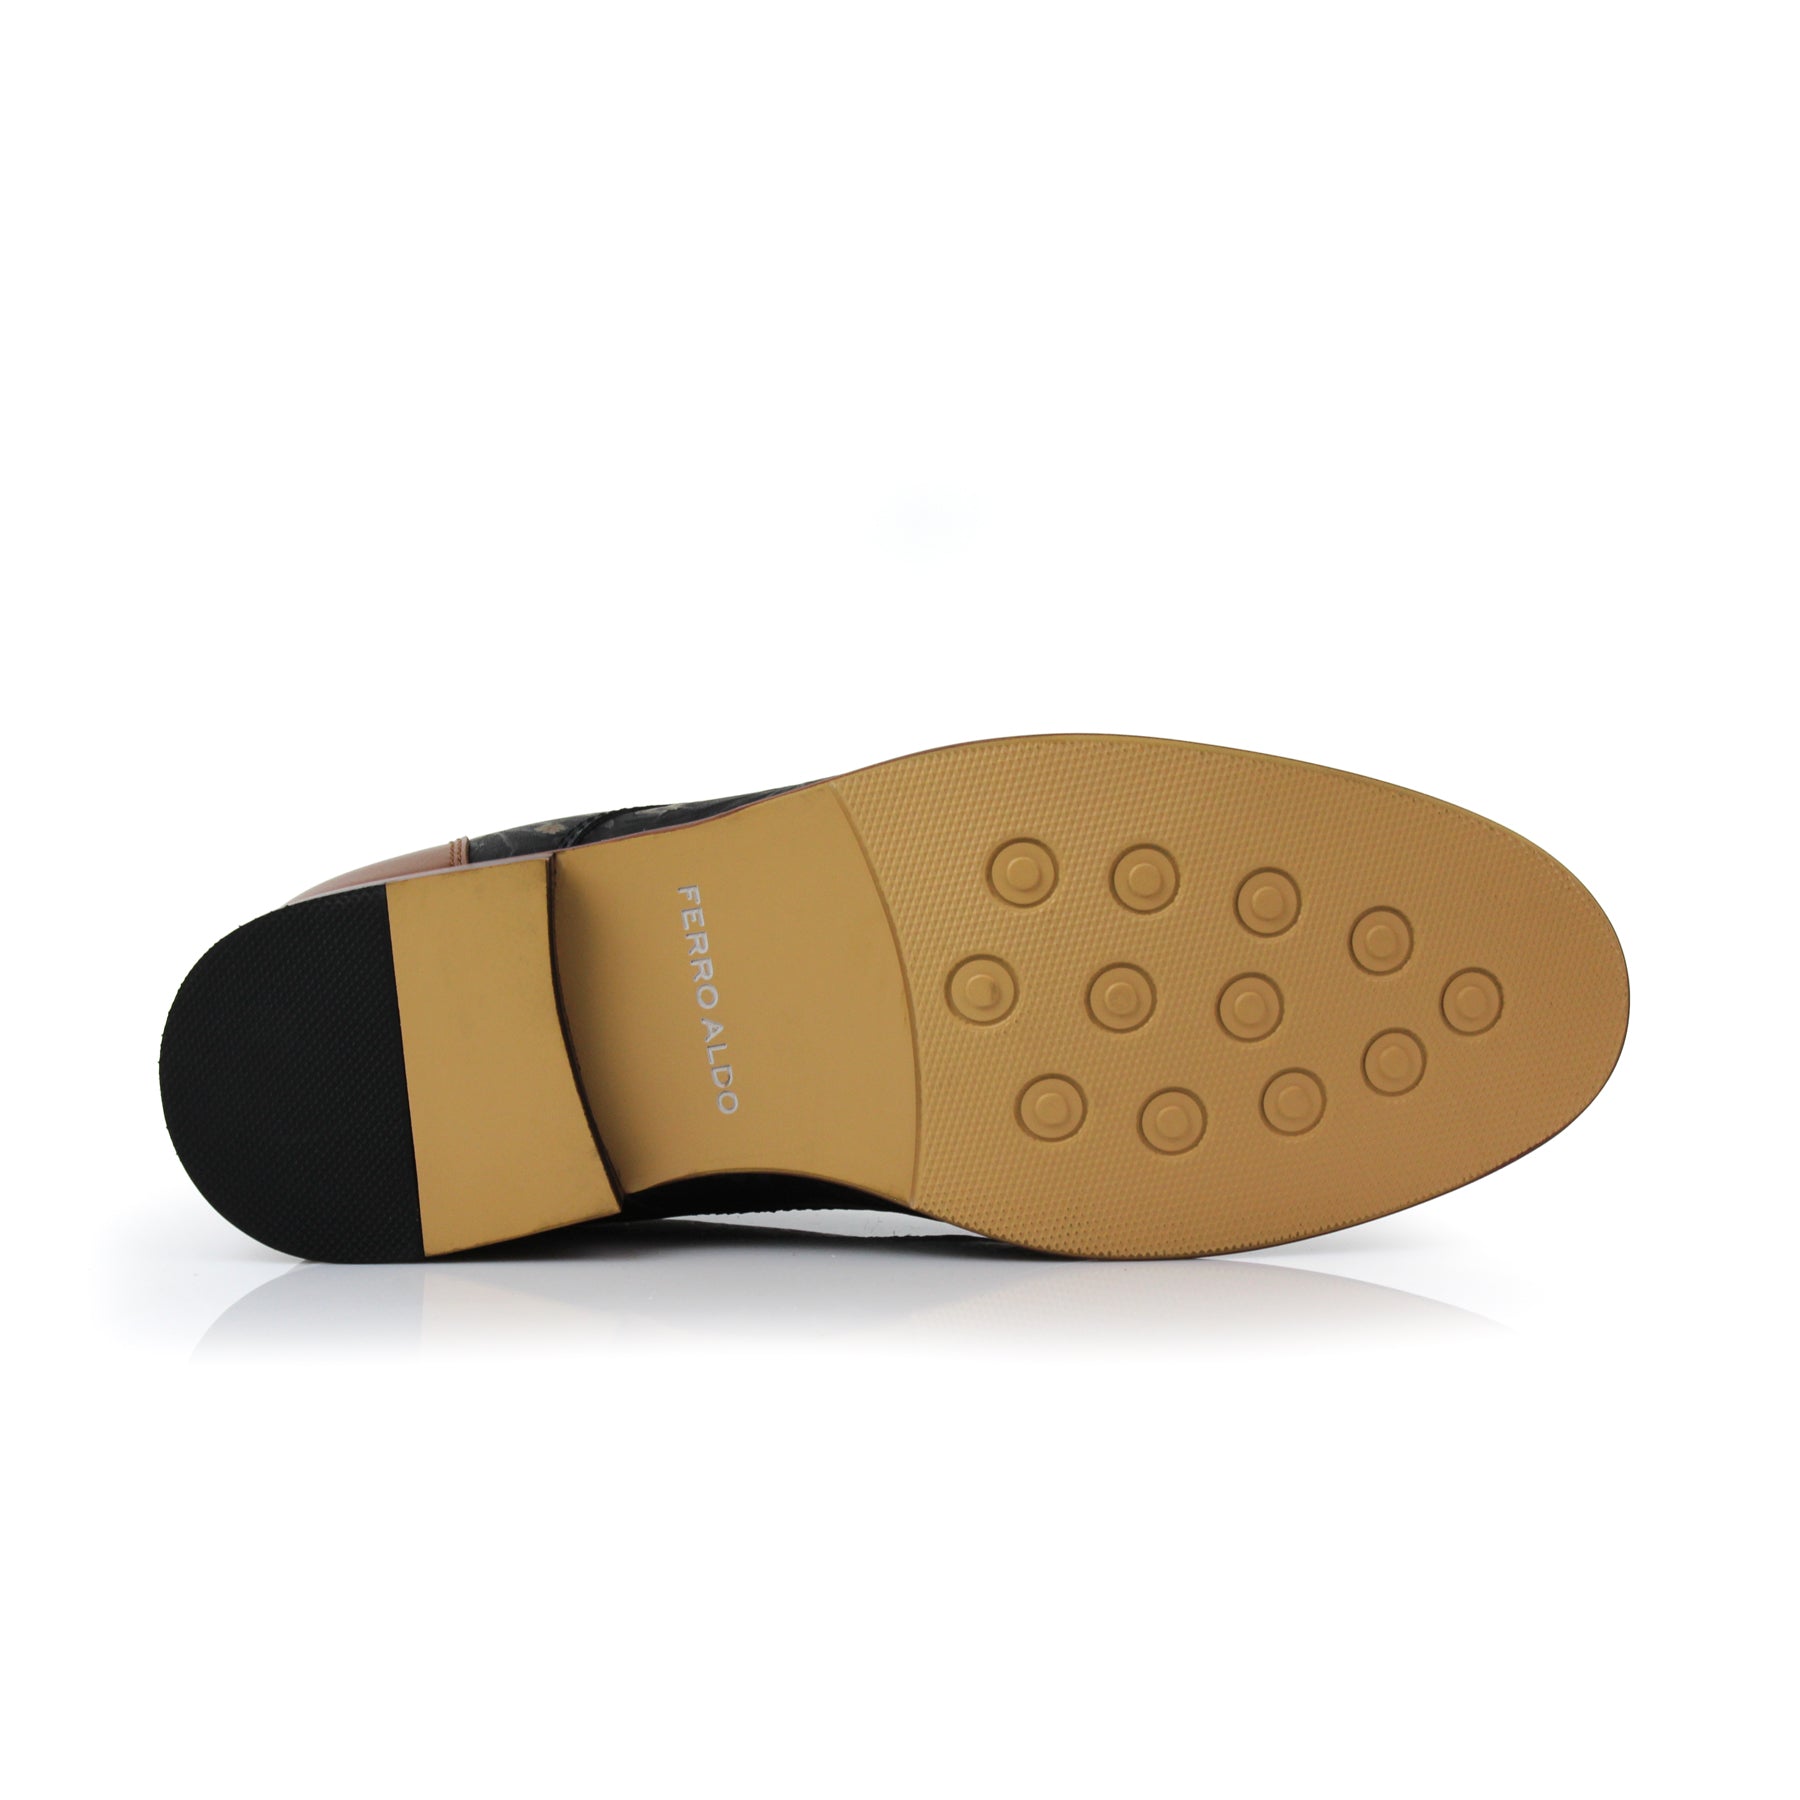 Floral Cap-Toe Derby Shoes | Berkley by Ferro Aldo | Conal Footwear | Bottom Sole Angle View